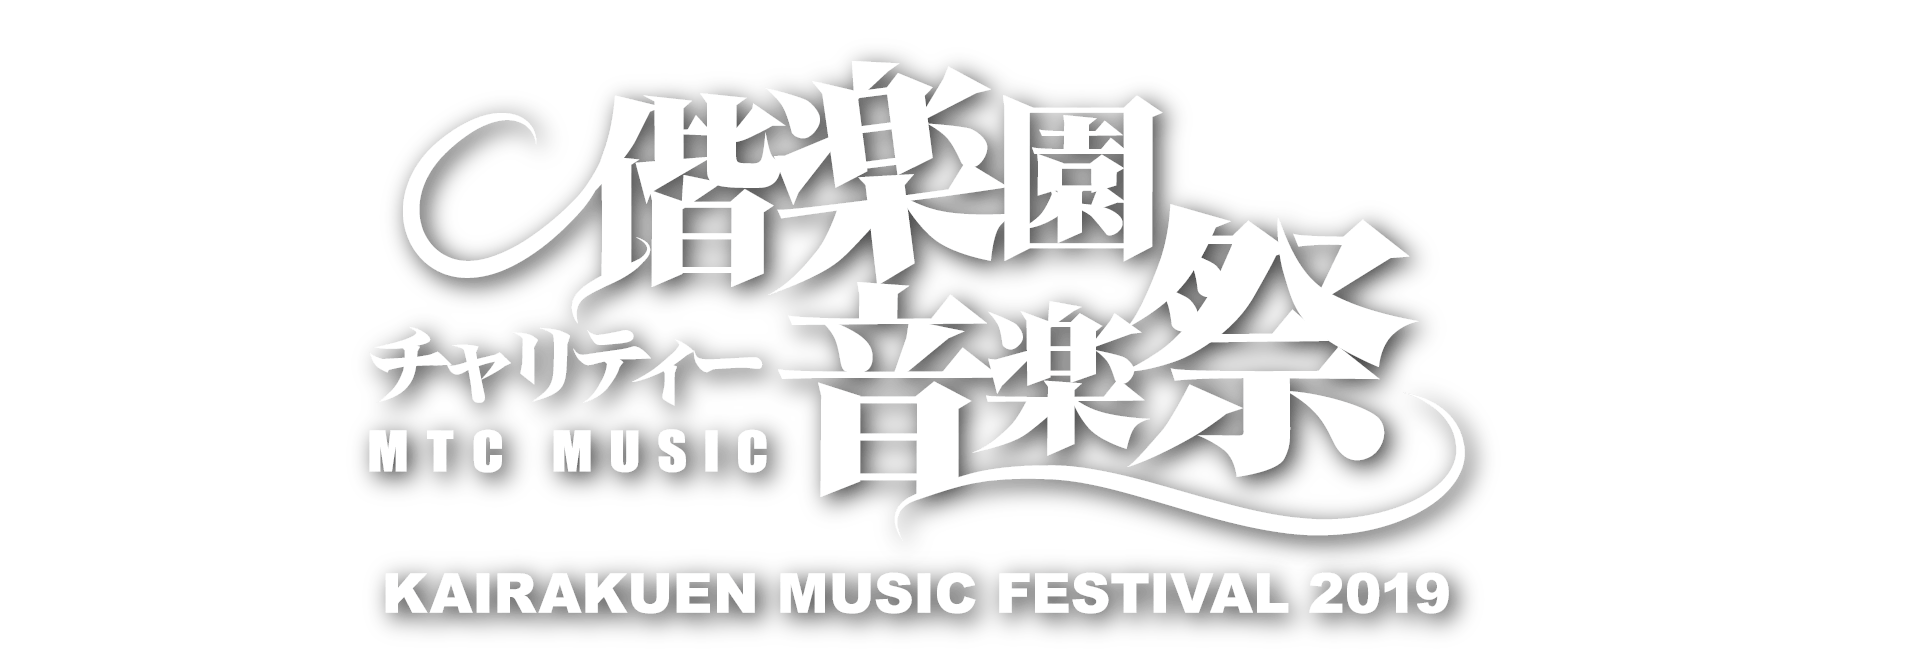 偕楽園音楽祭 OFFICIAL WEB